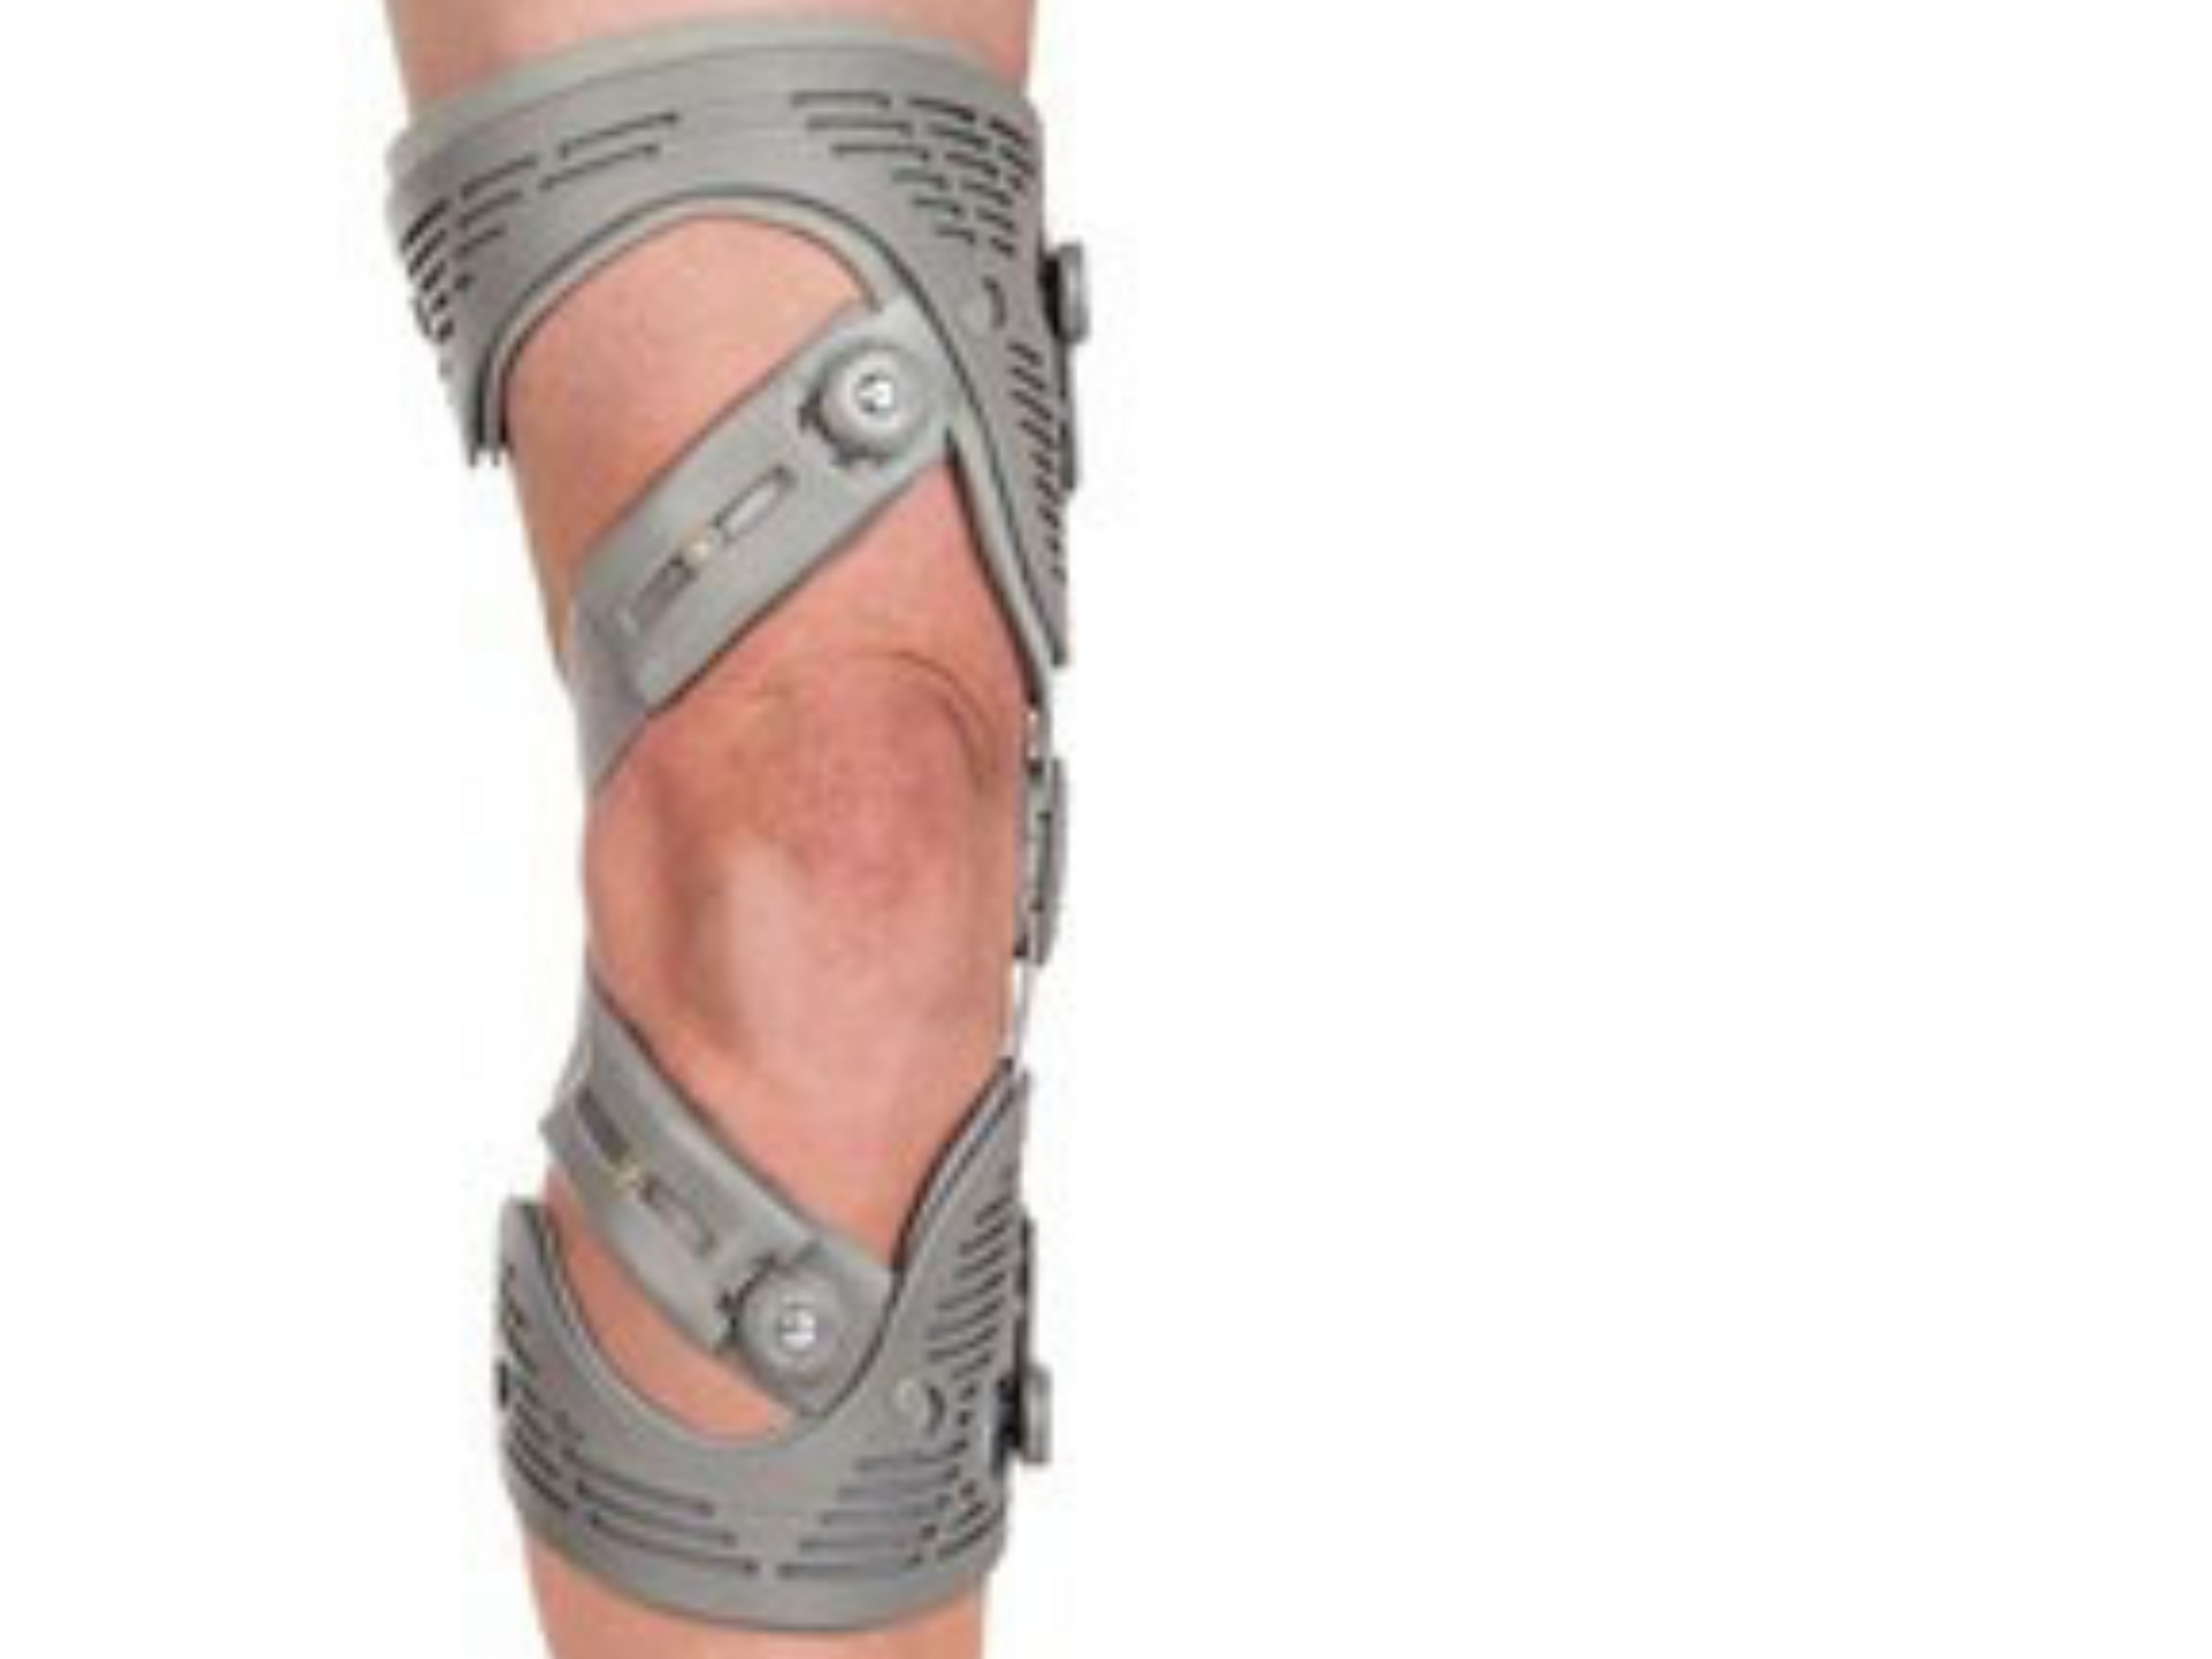 La rodillera de descarga está diseñada para disminuir la presión sobre la zona lesionada de la rodilla.